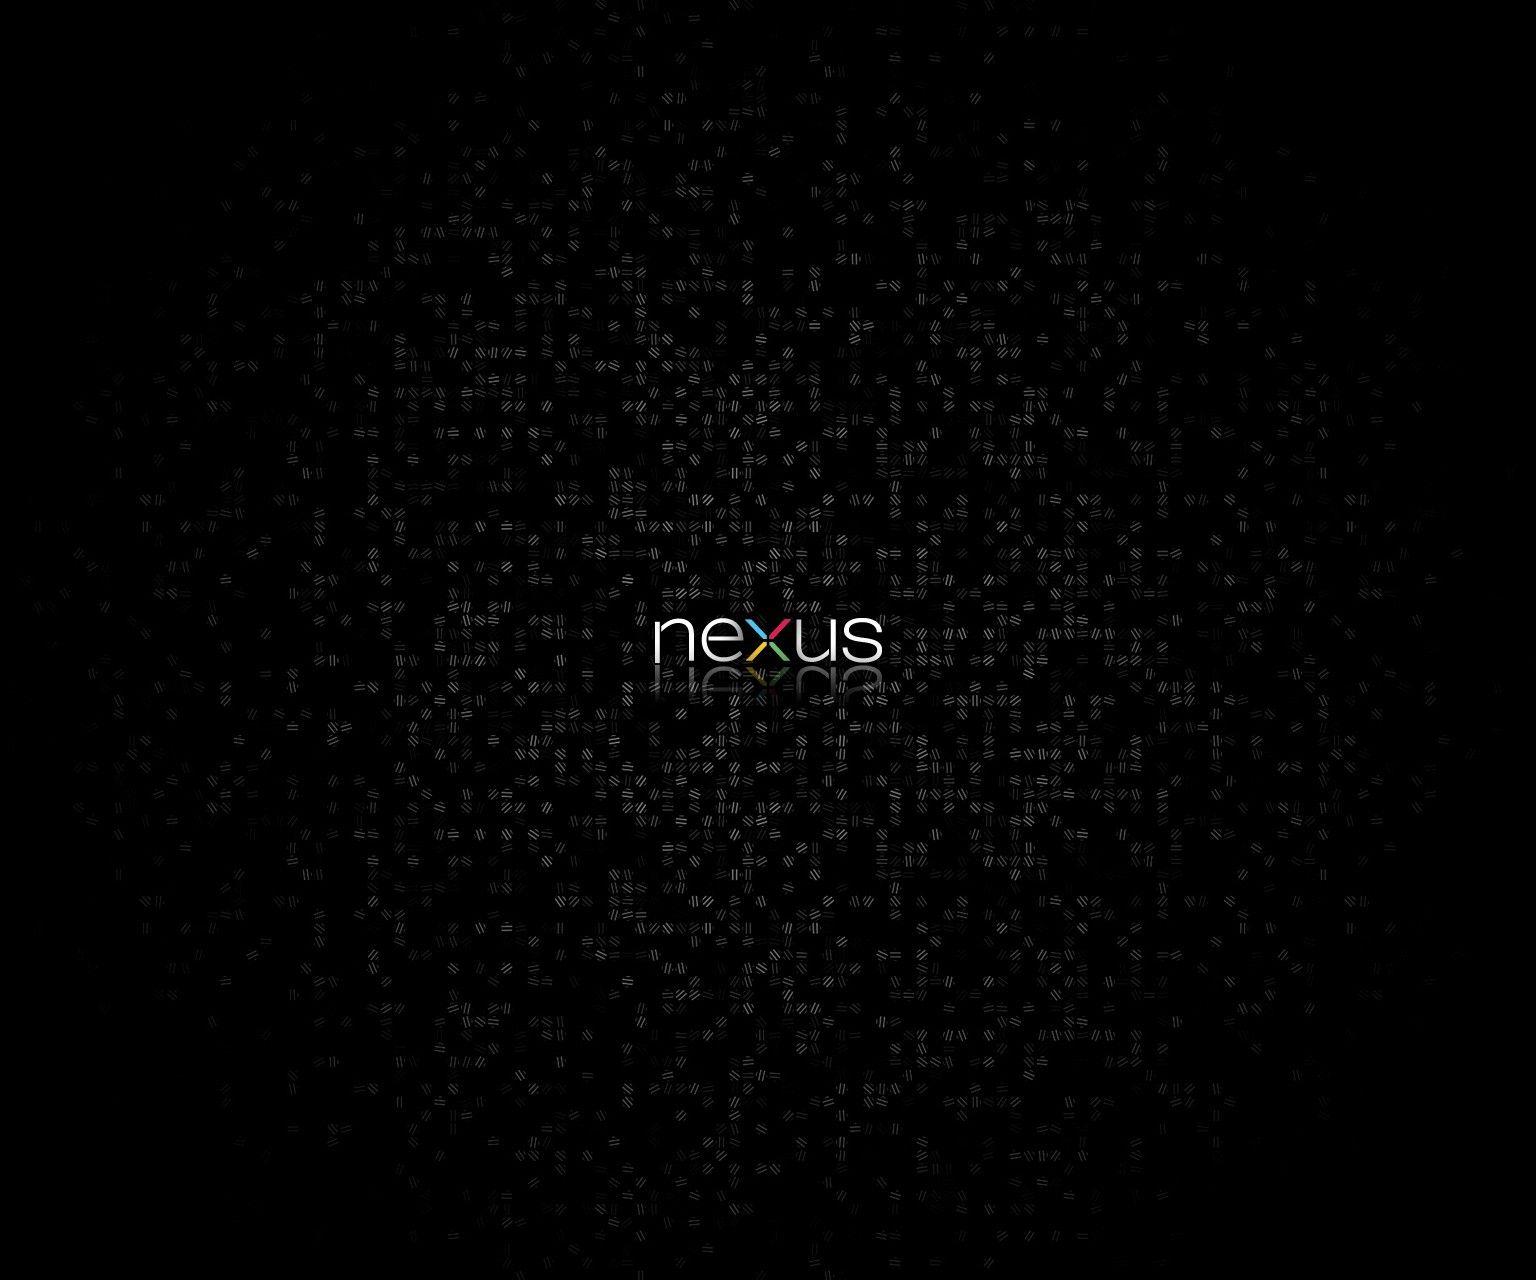 Google nexus Wallpapers Download | MobCup